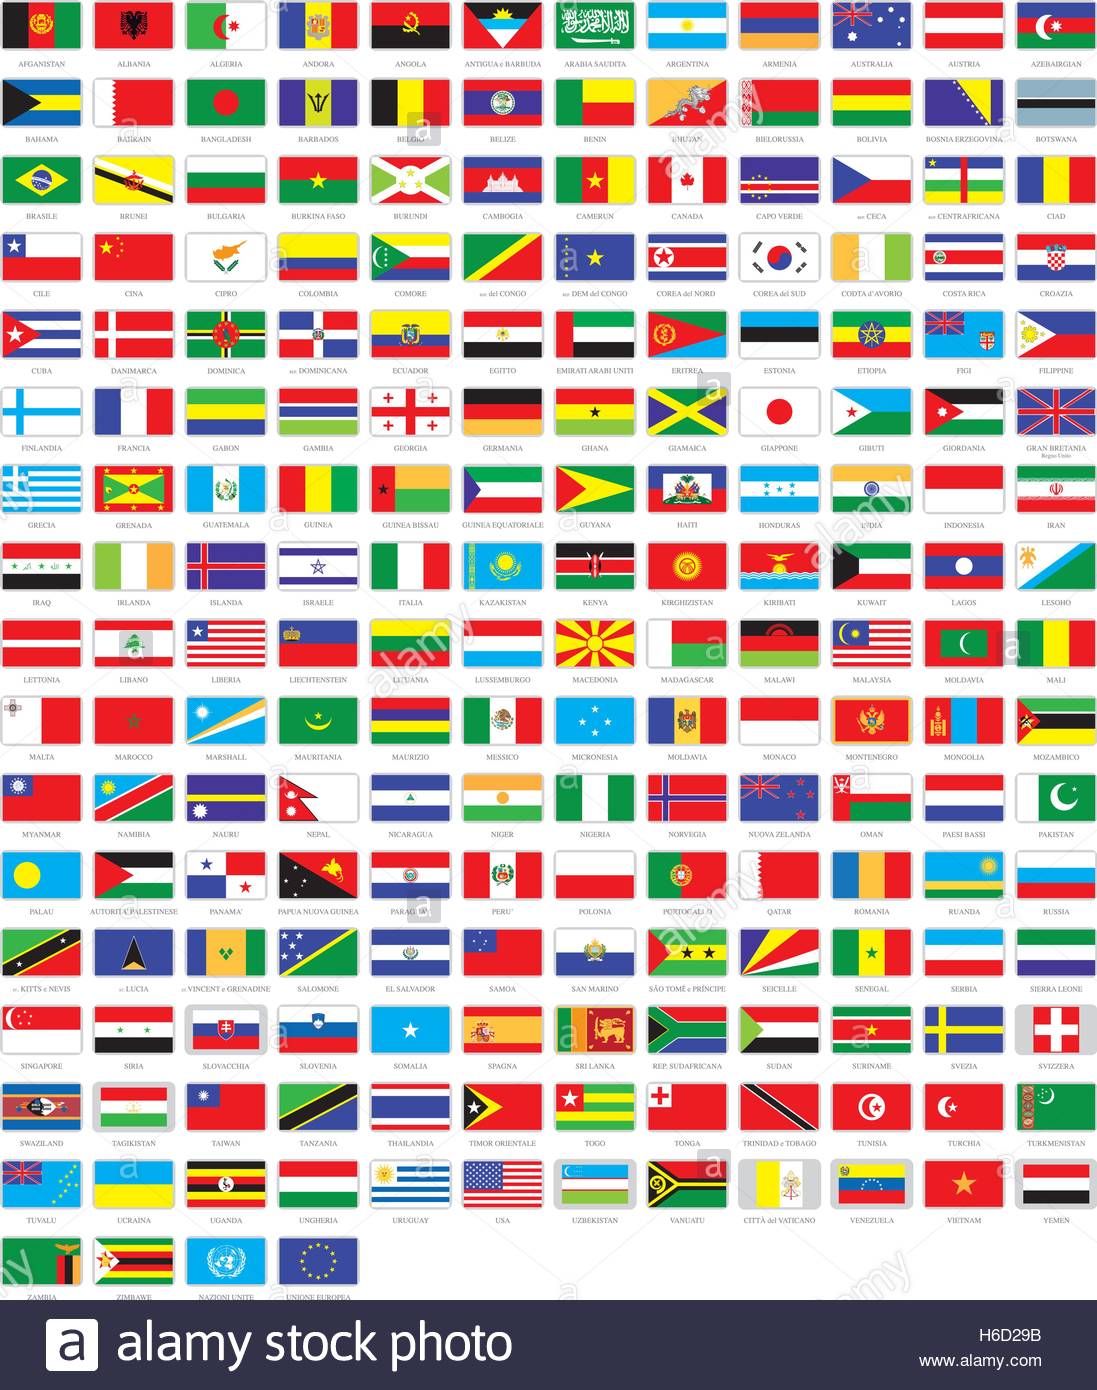 Все флаги городов фото с названиями городов